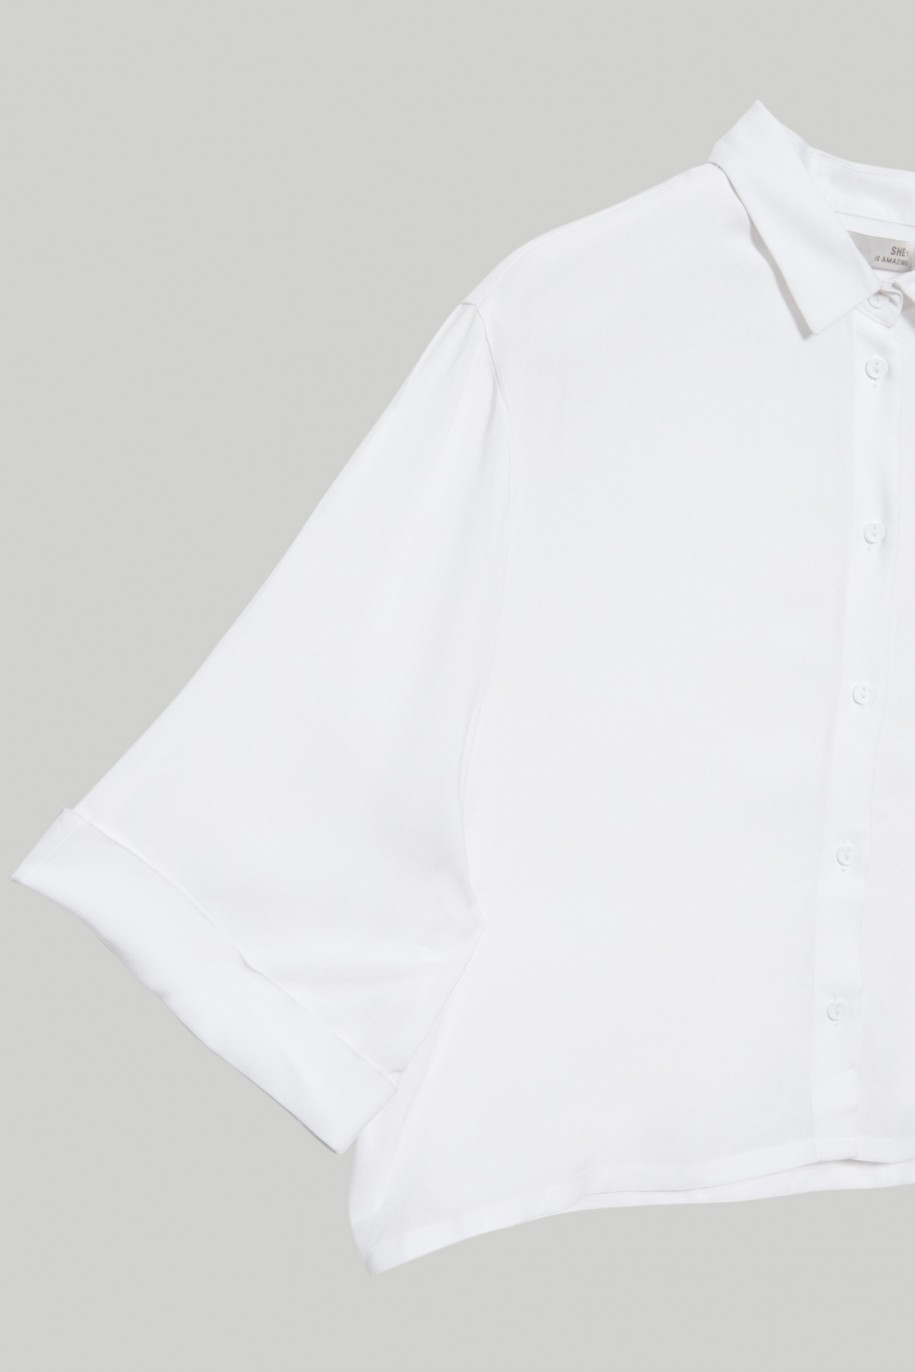 Biała koszula z krótkim rękawem dla dziewczyny - 28270